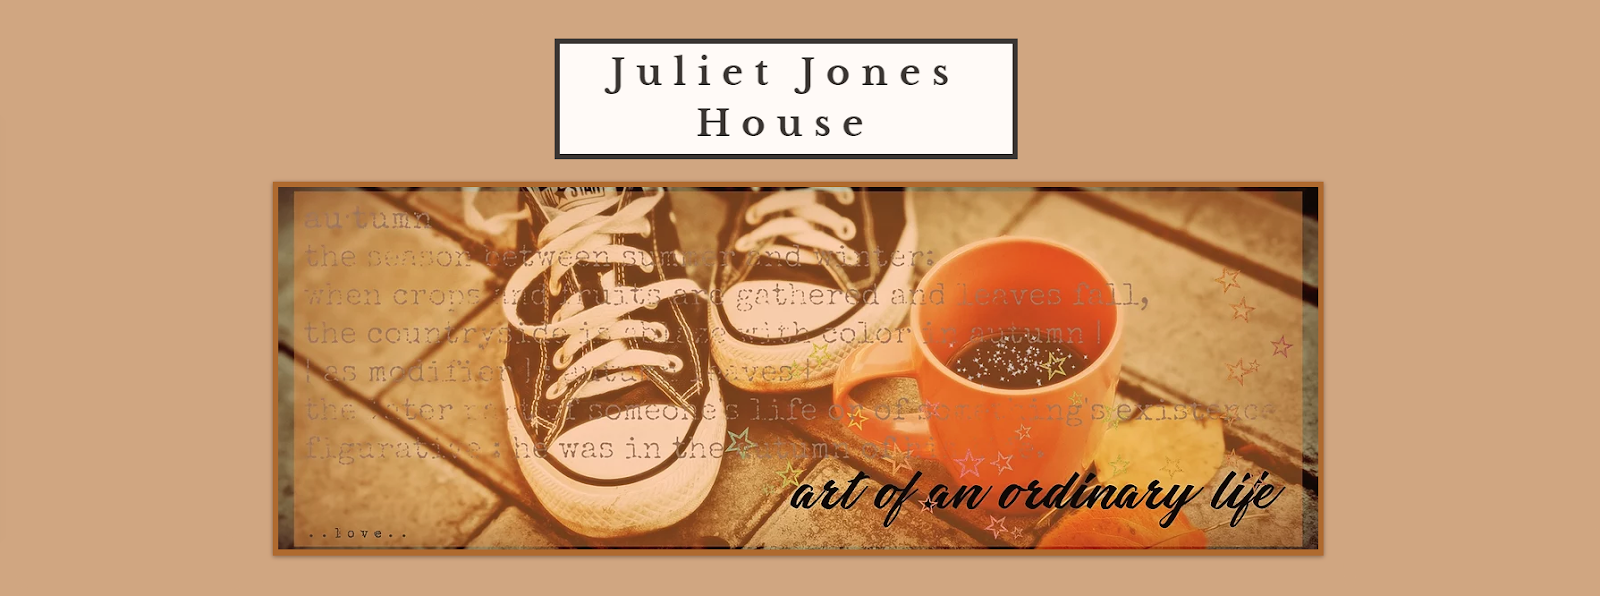 House Of Juliet Jones